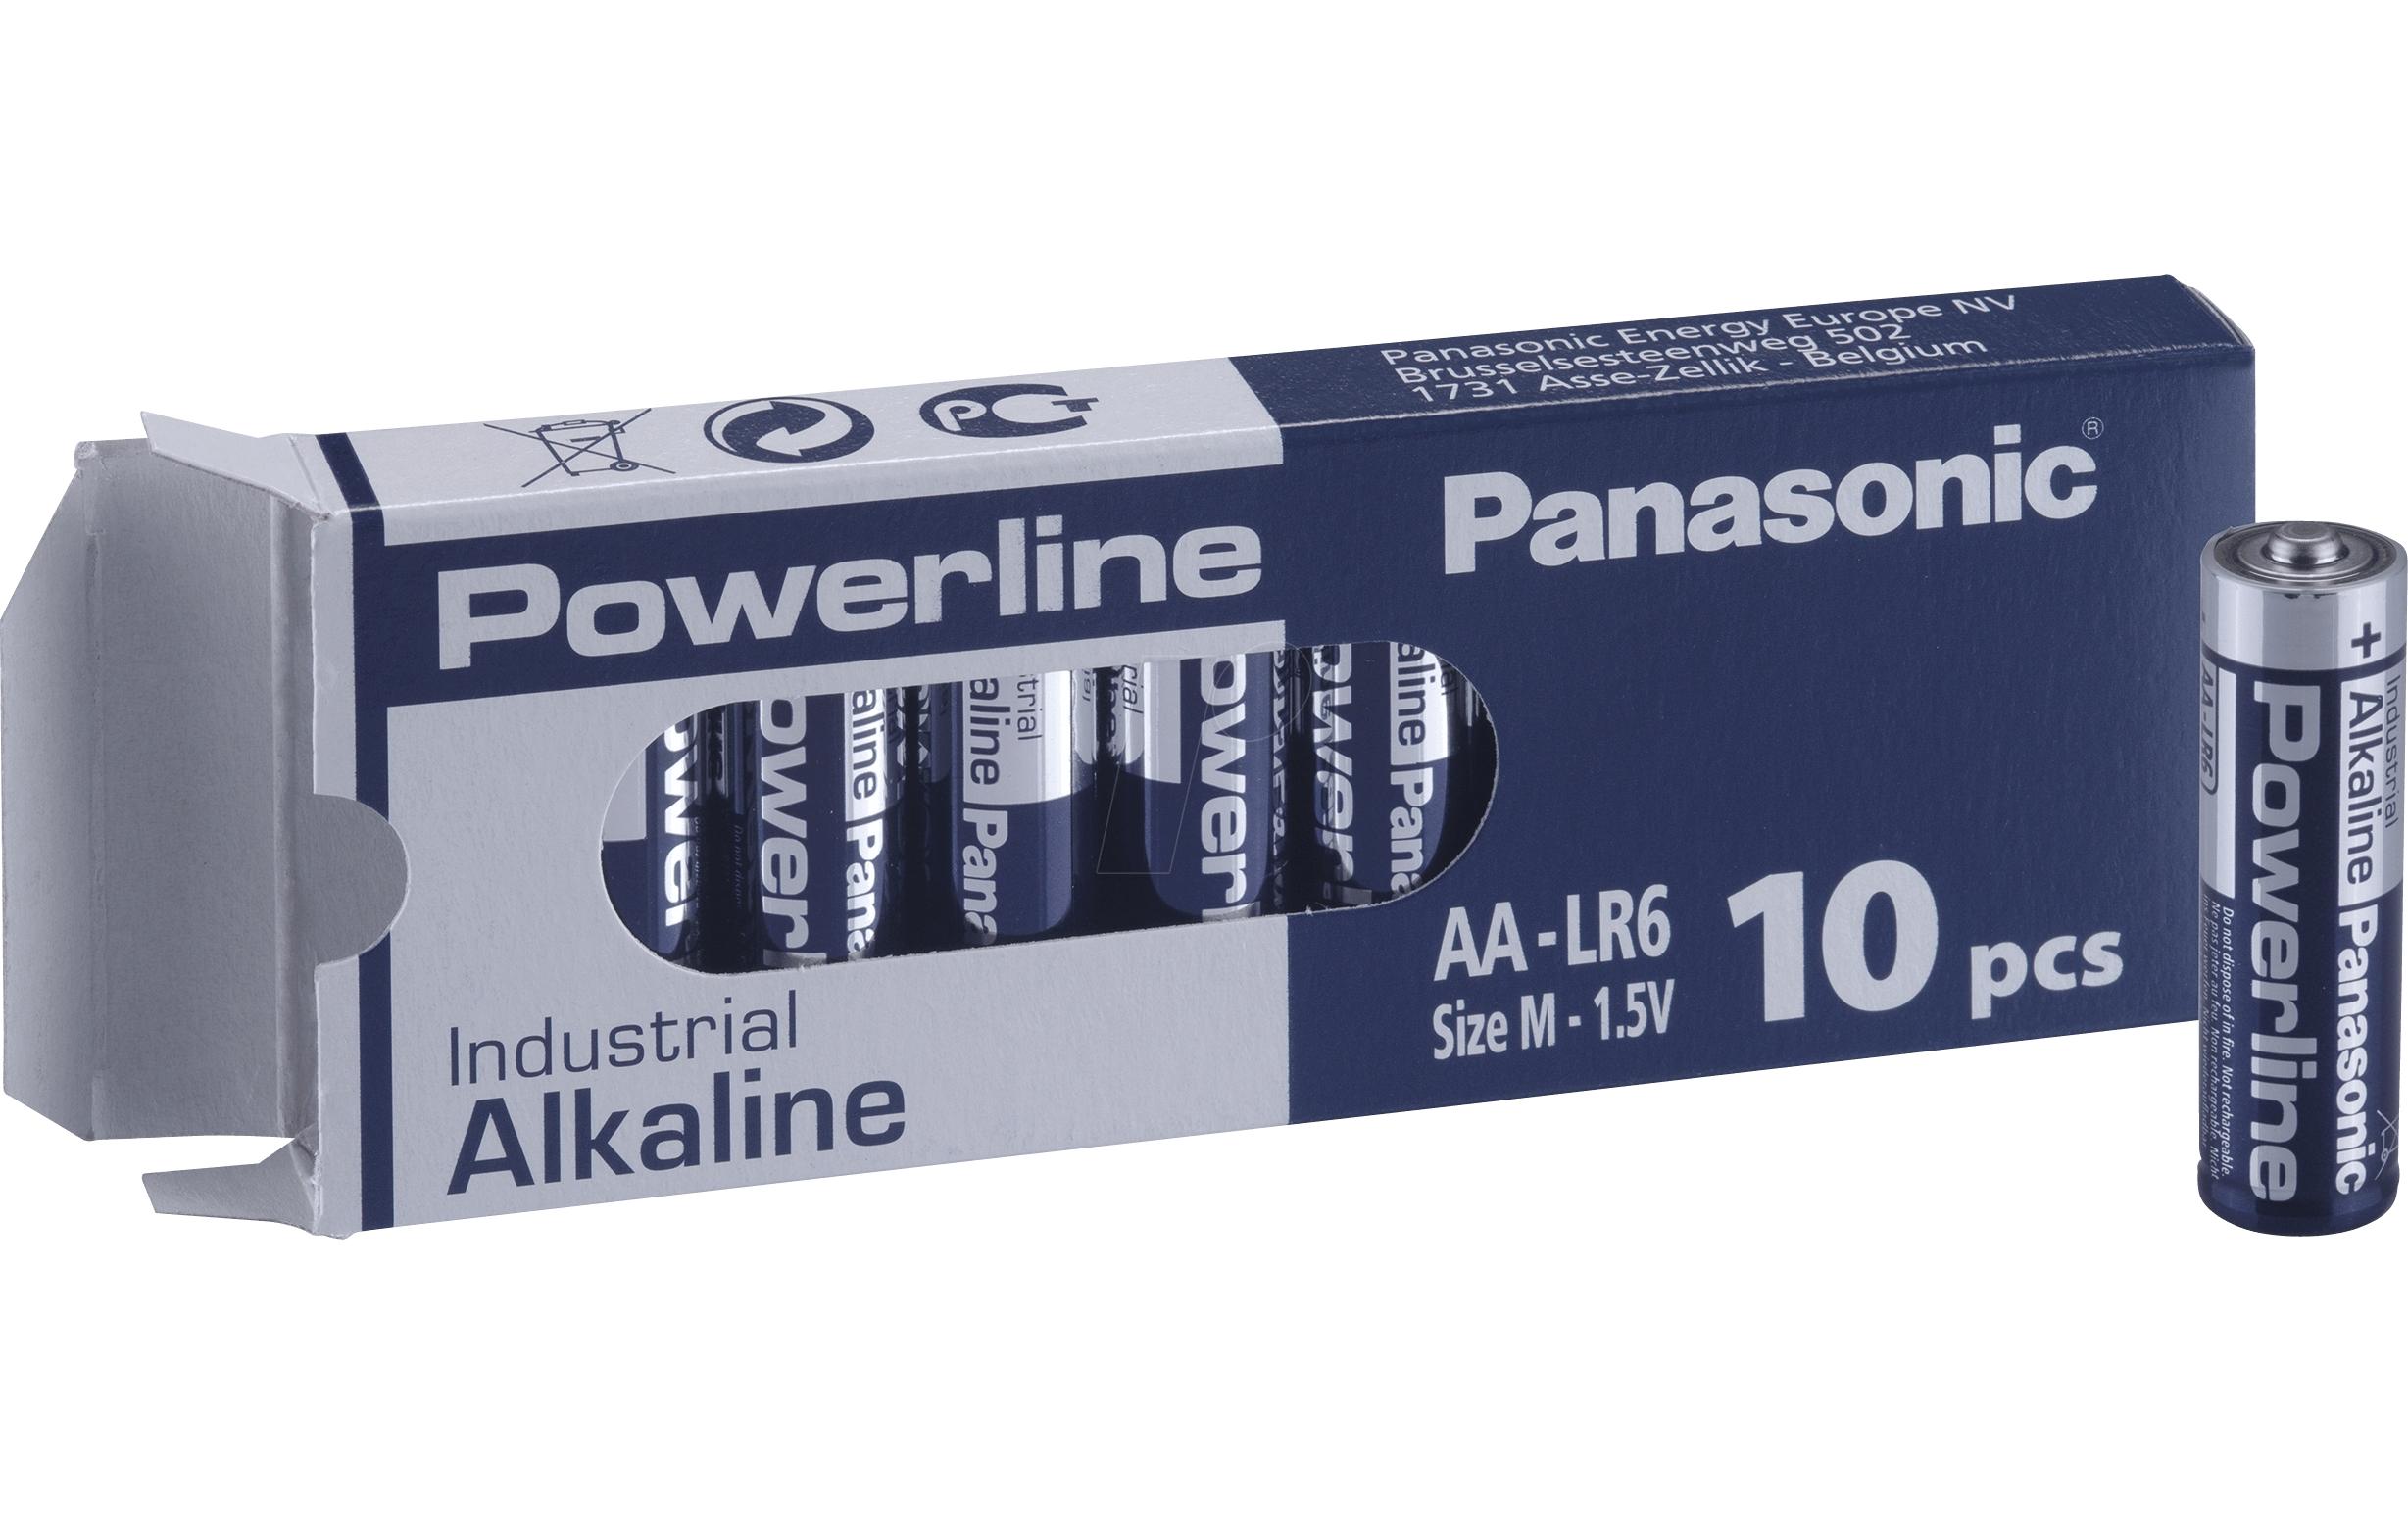 Panasonic Alkaline Powerline Industrial AA